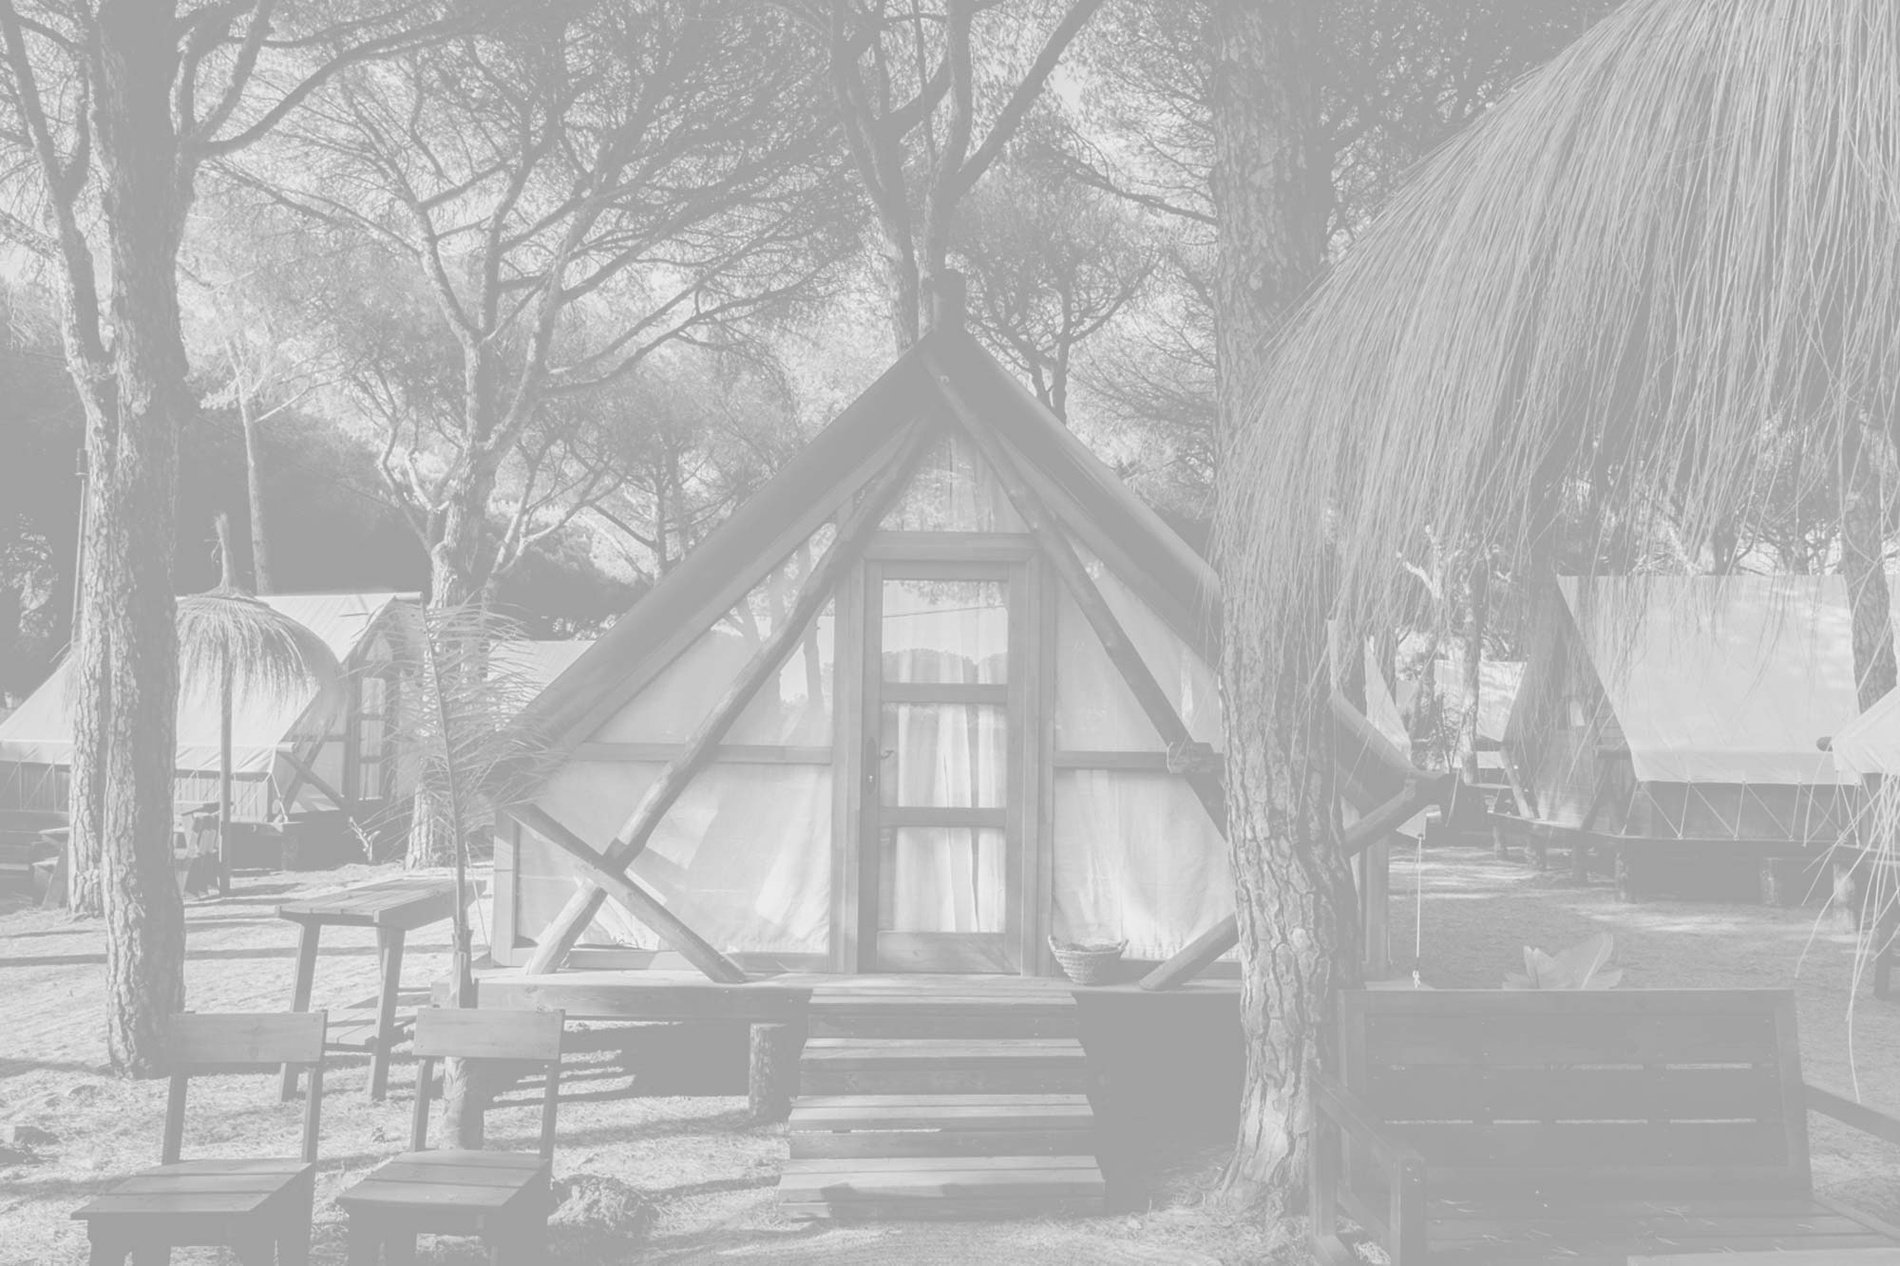 une photo en noir et blanc d' une tente dans une forêt=s1900